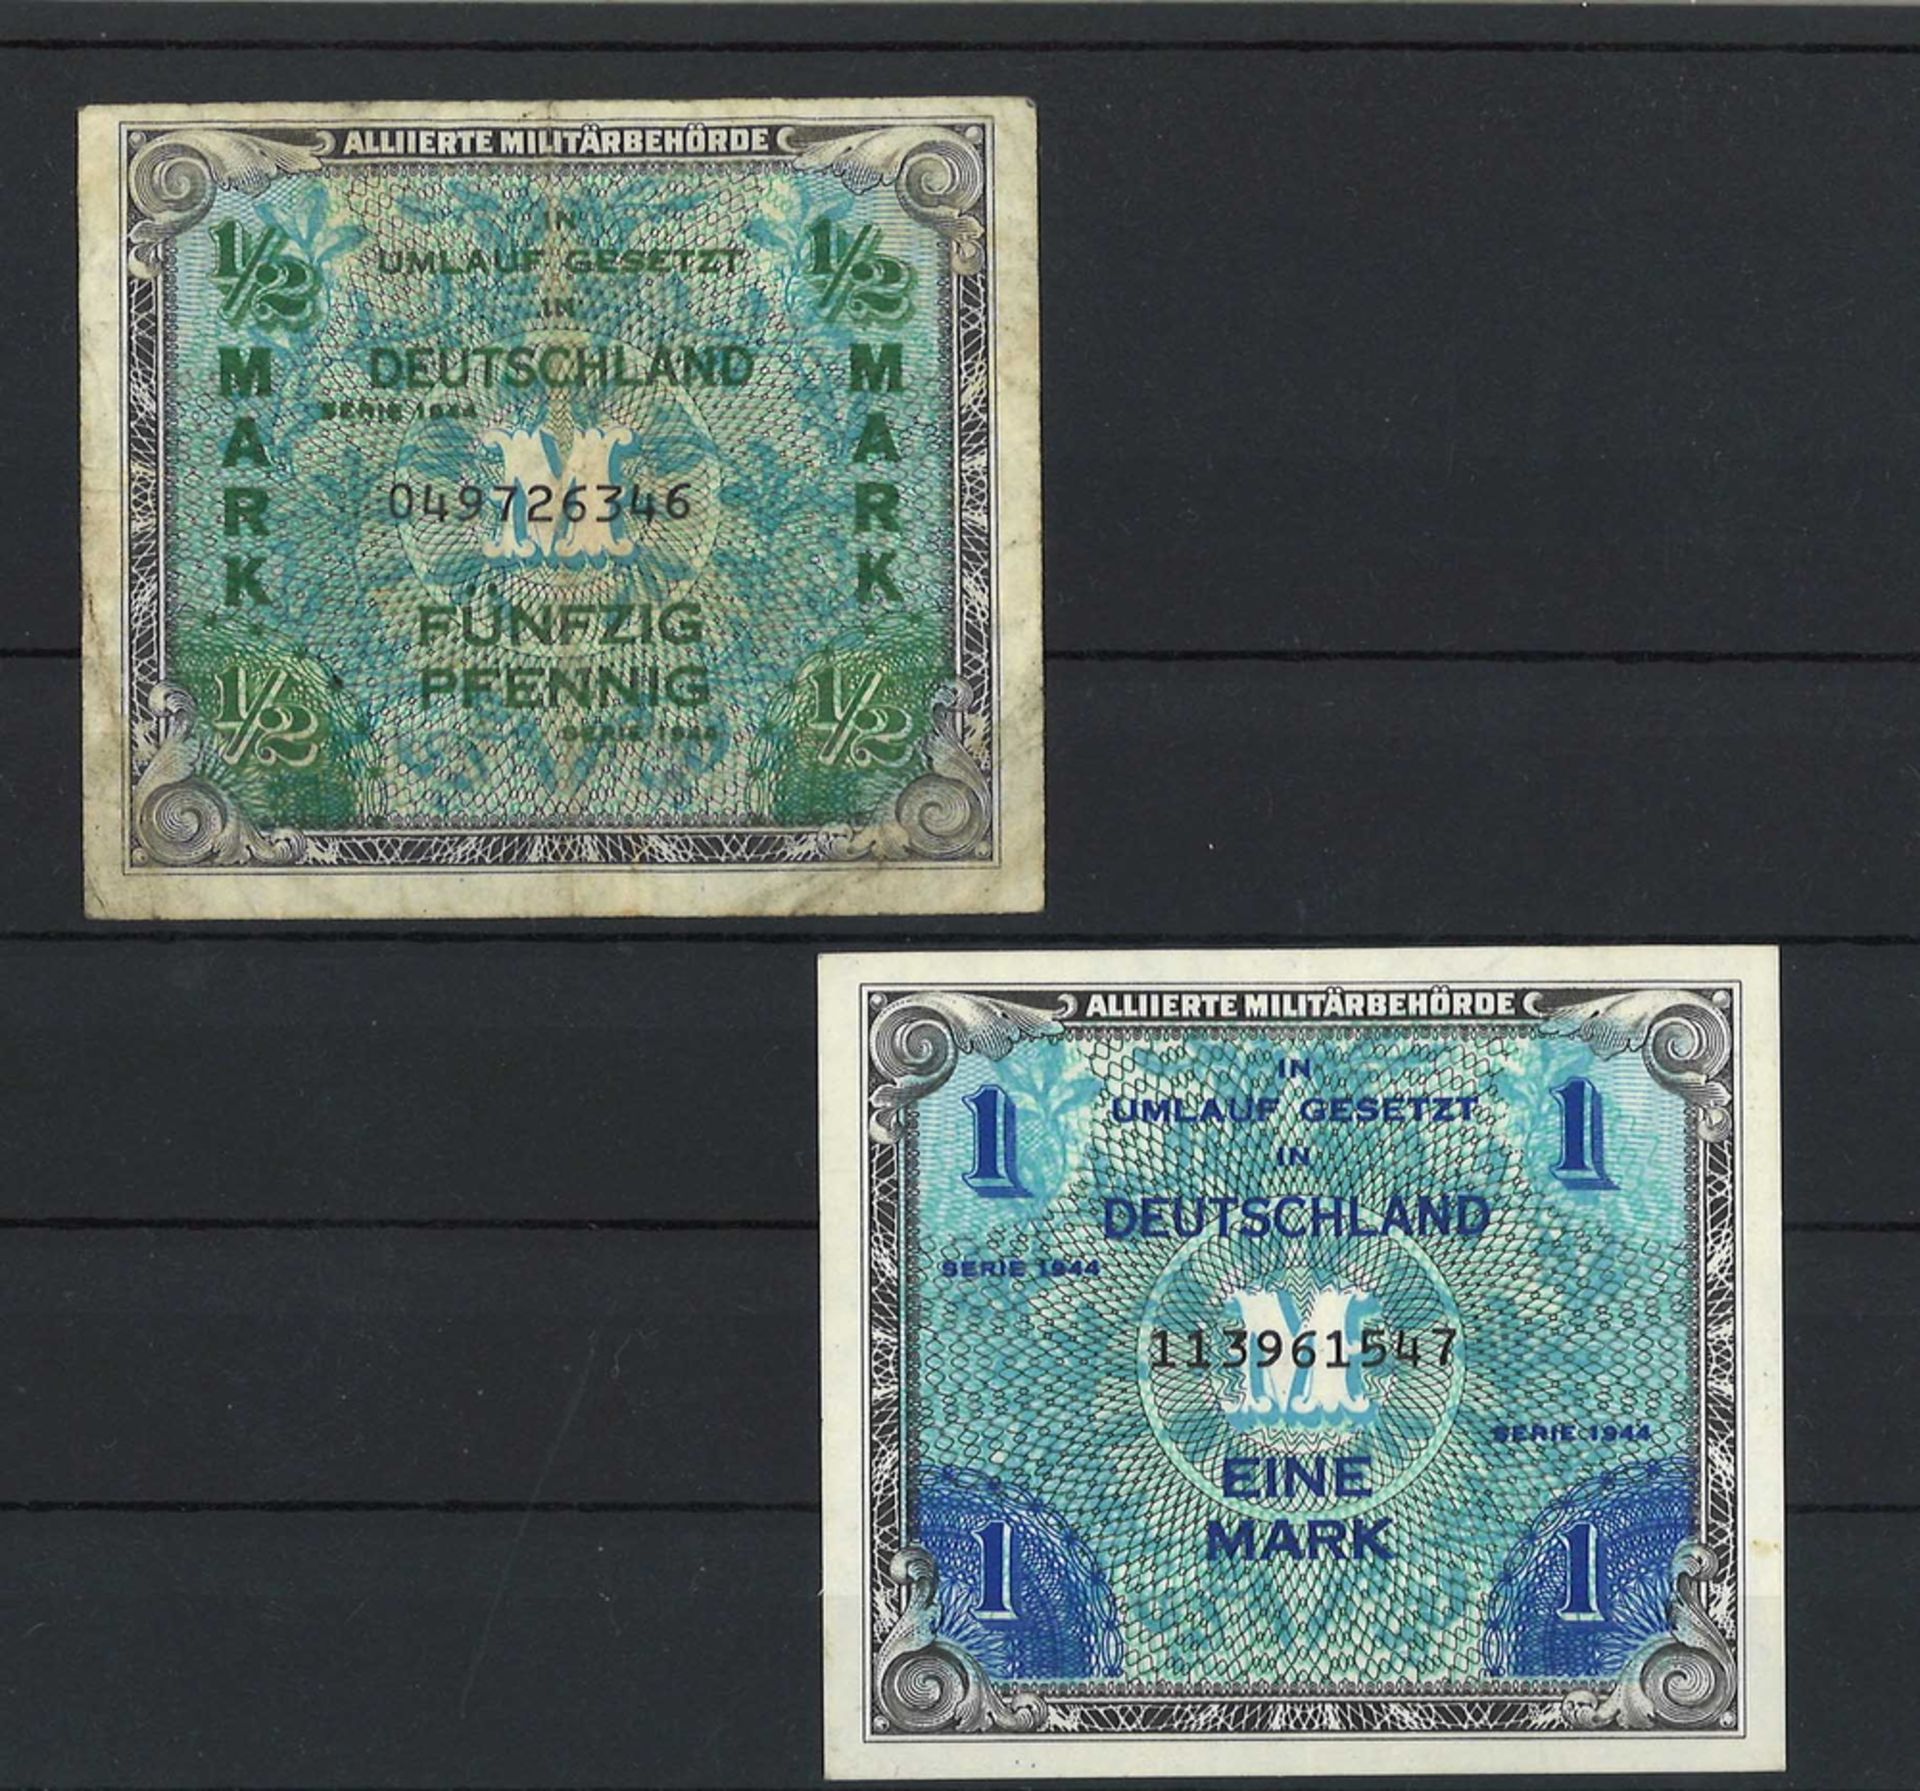 2 Banknoten, alliierte Militärbehörde 1944 in Deutschland